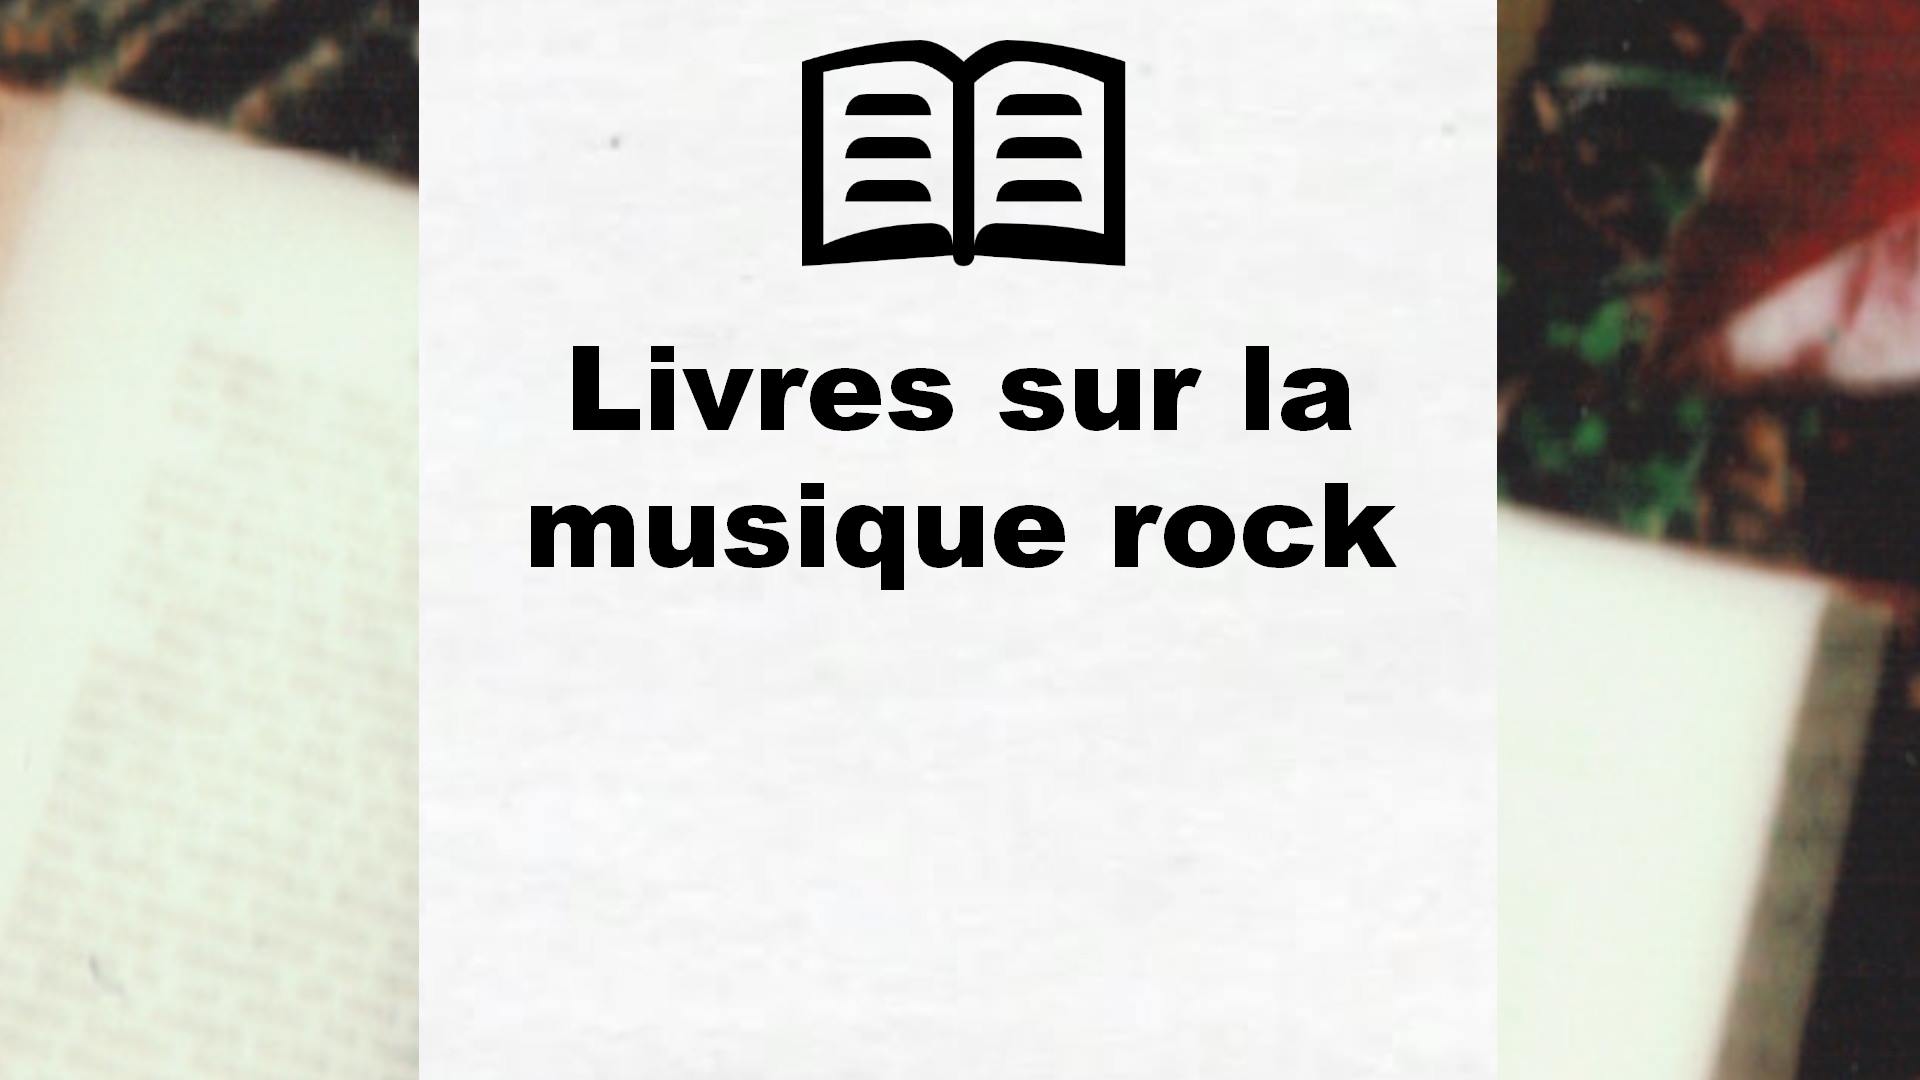 Livres sur la musique rock